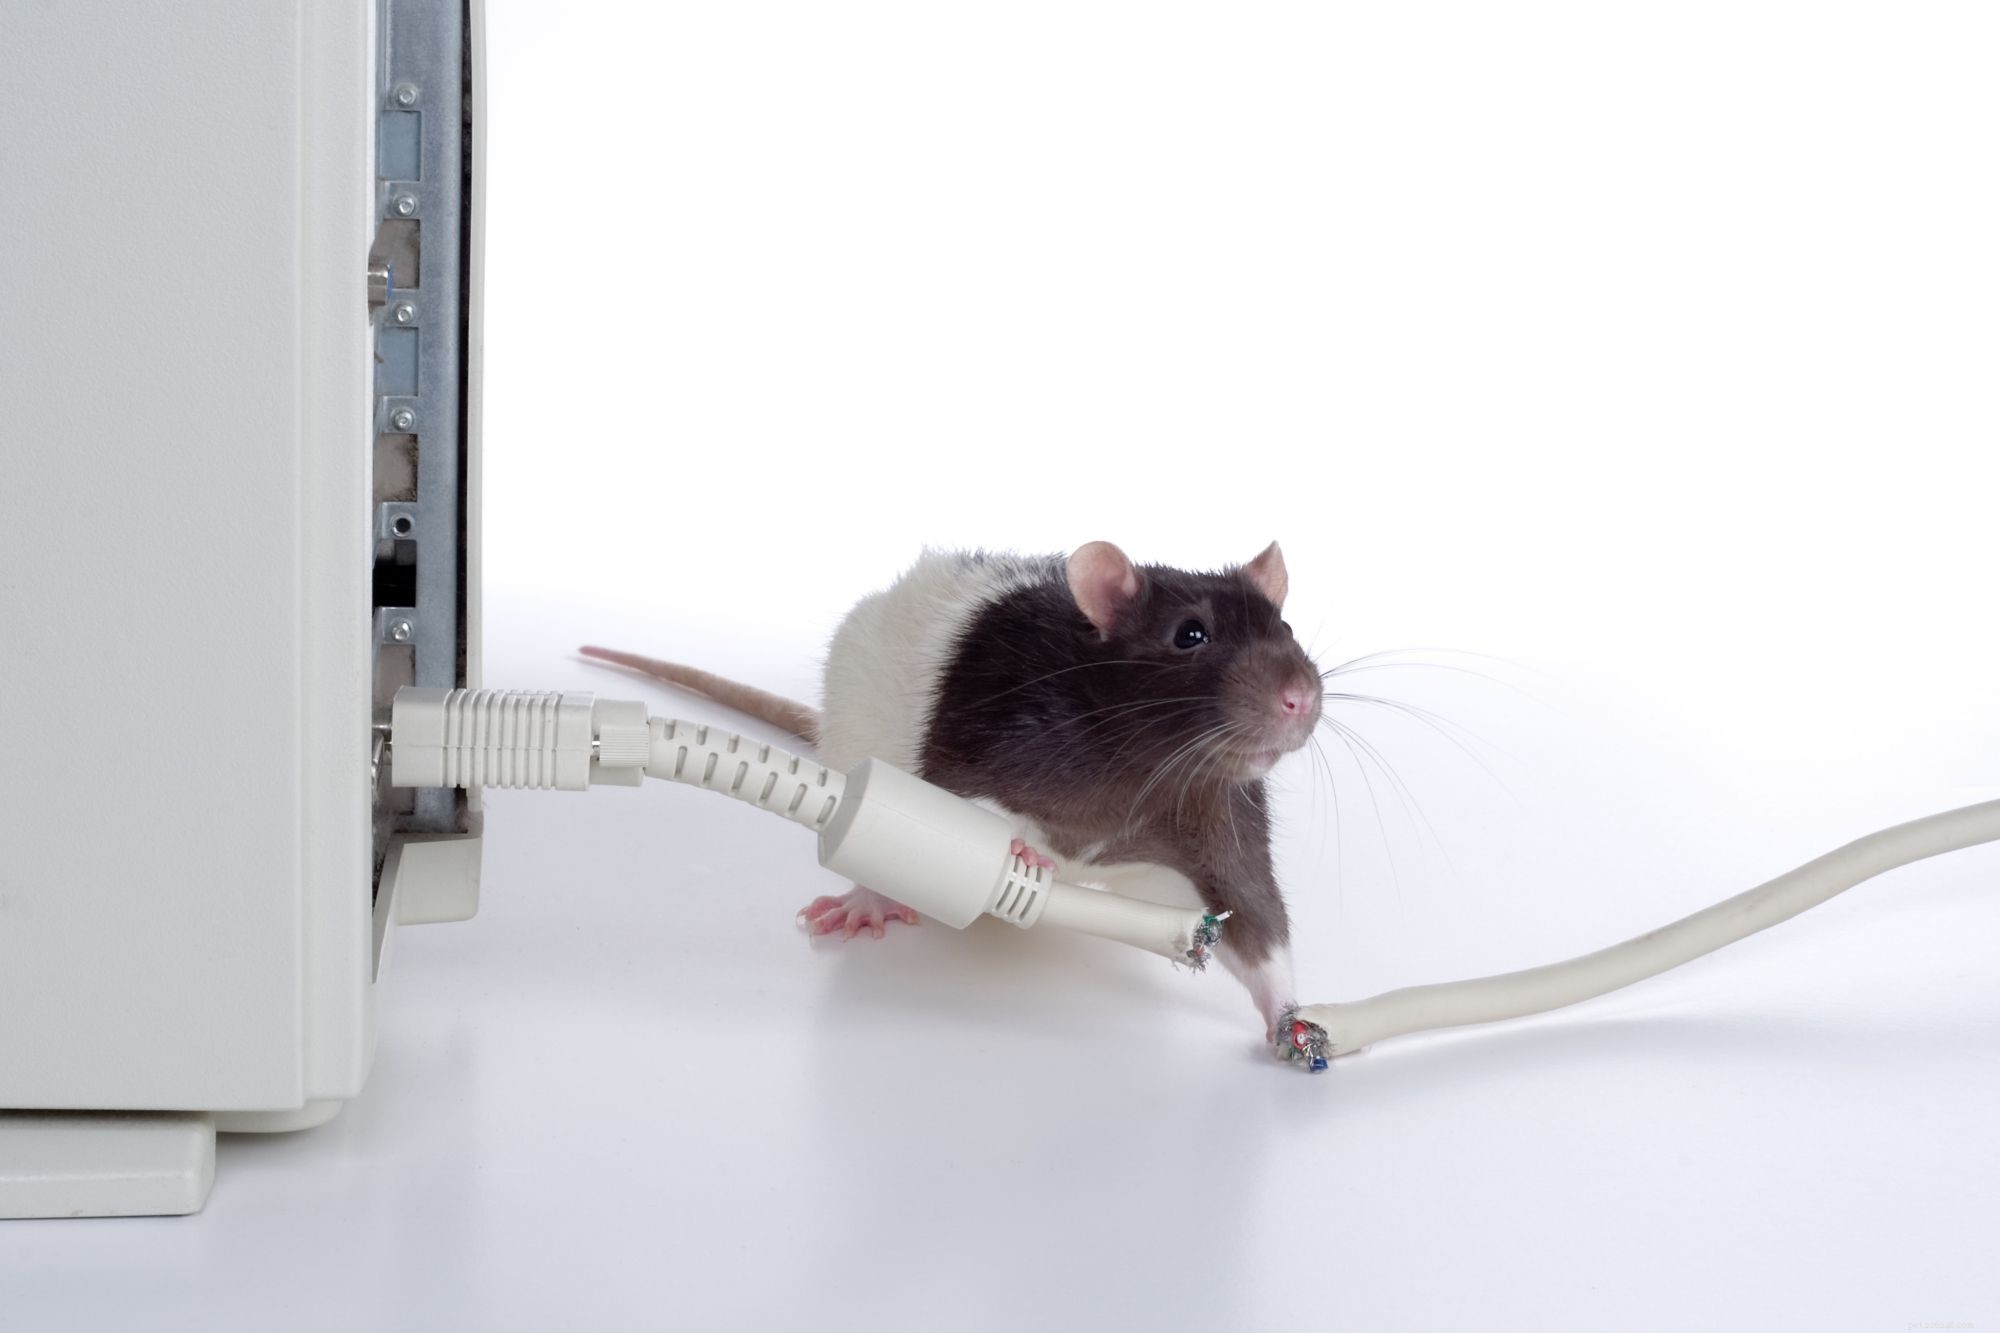 Personalidade, inteligência e cuidado do rato